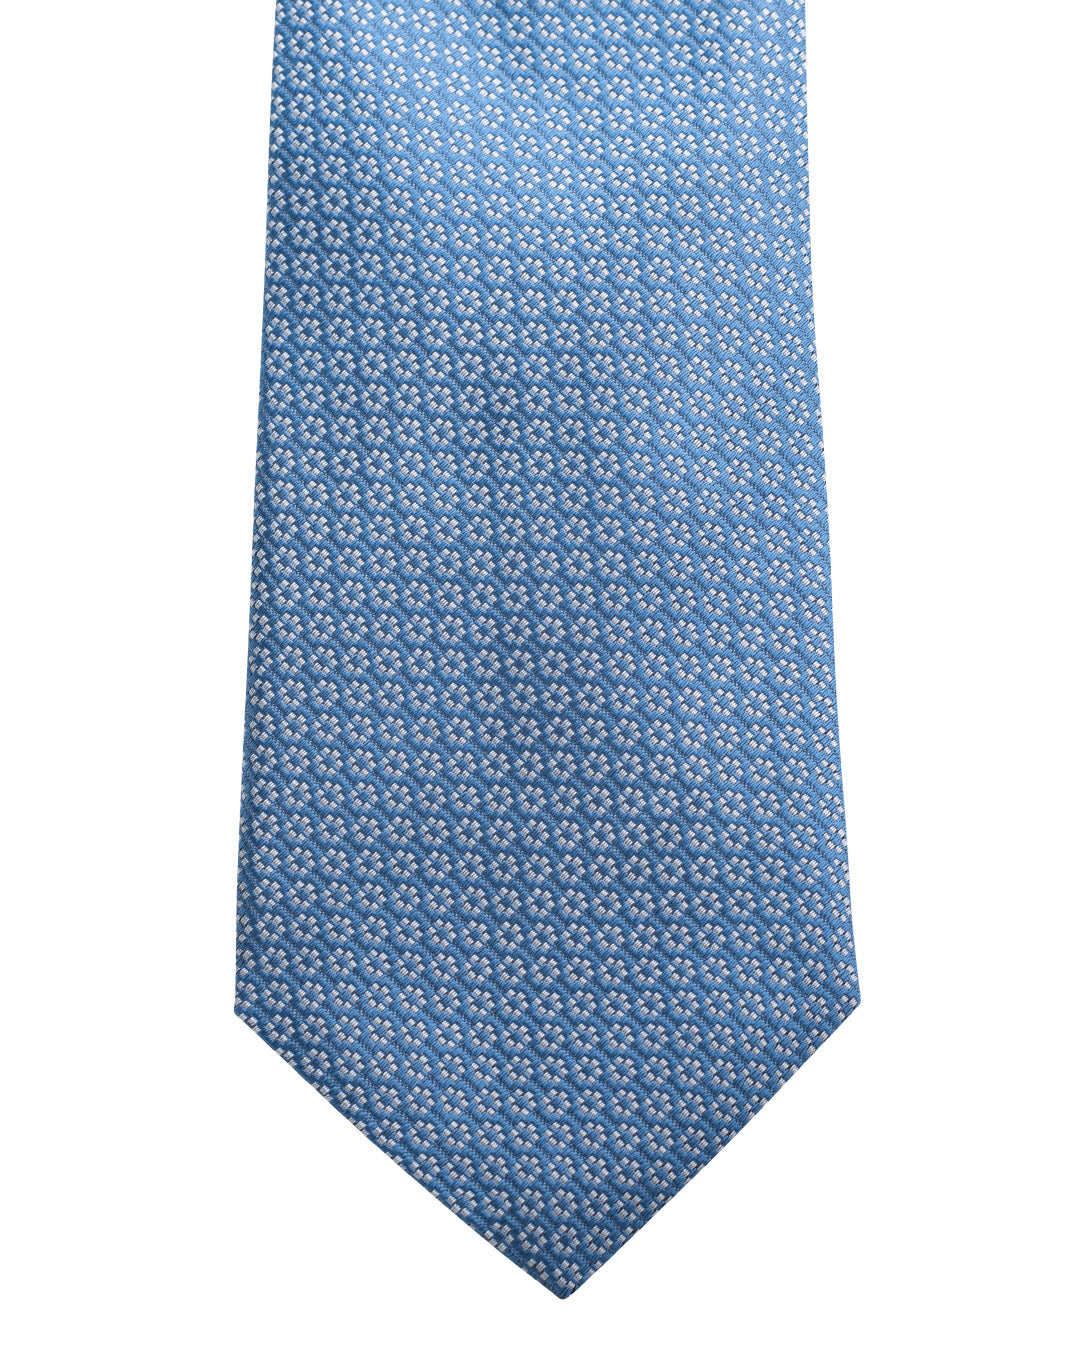 Blue Floral Pattern Italian Silk Tie